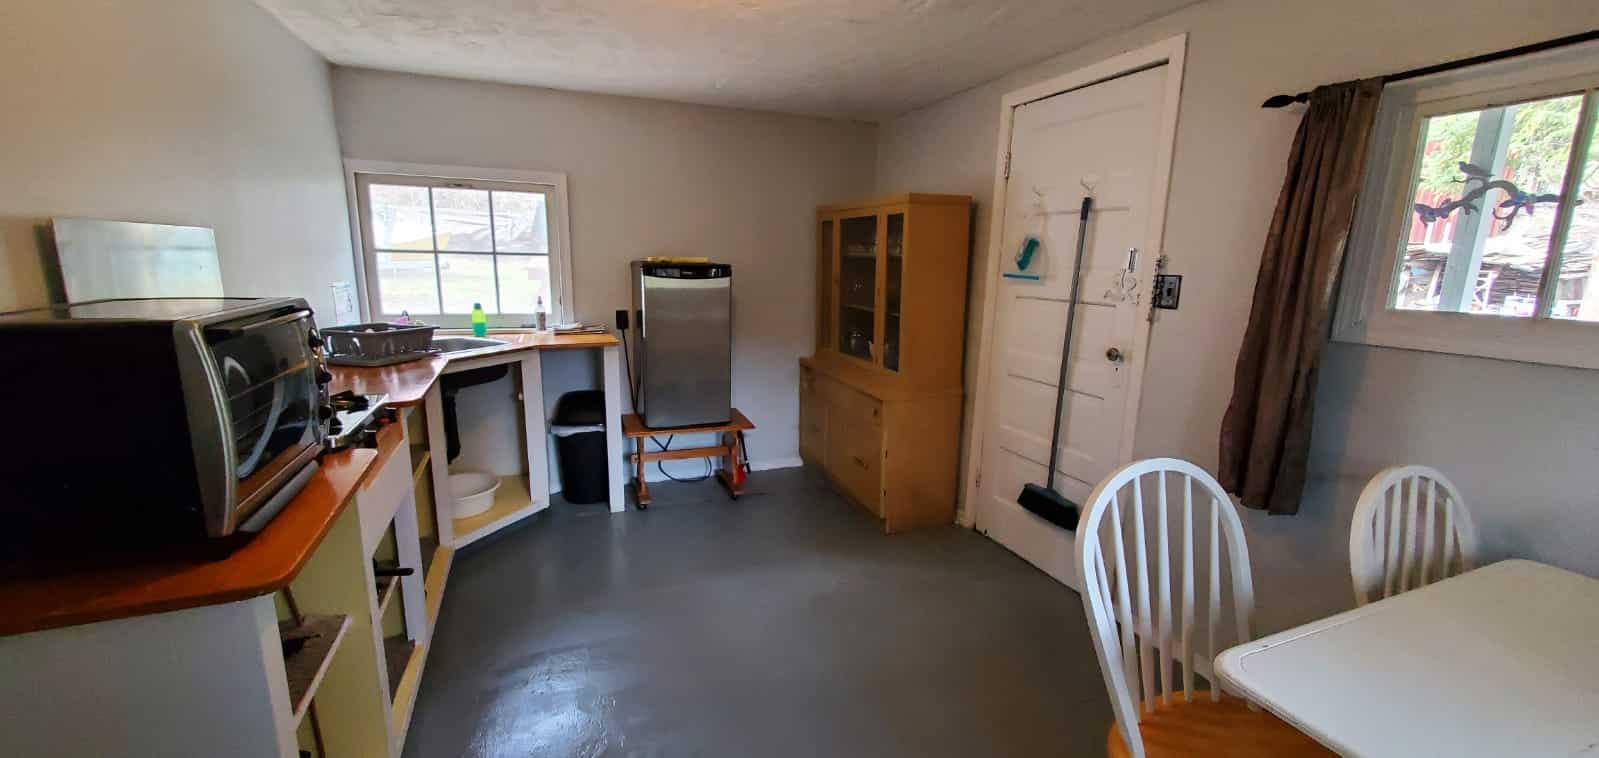 rental cabin 7 kitchen area